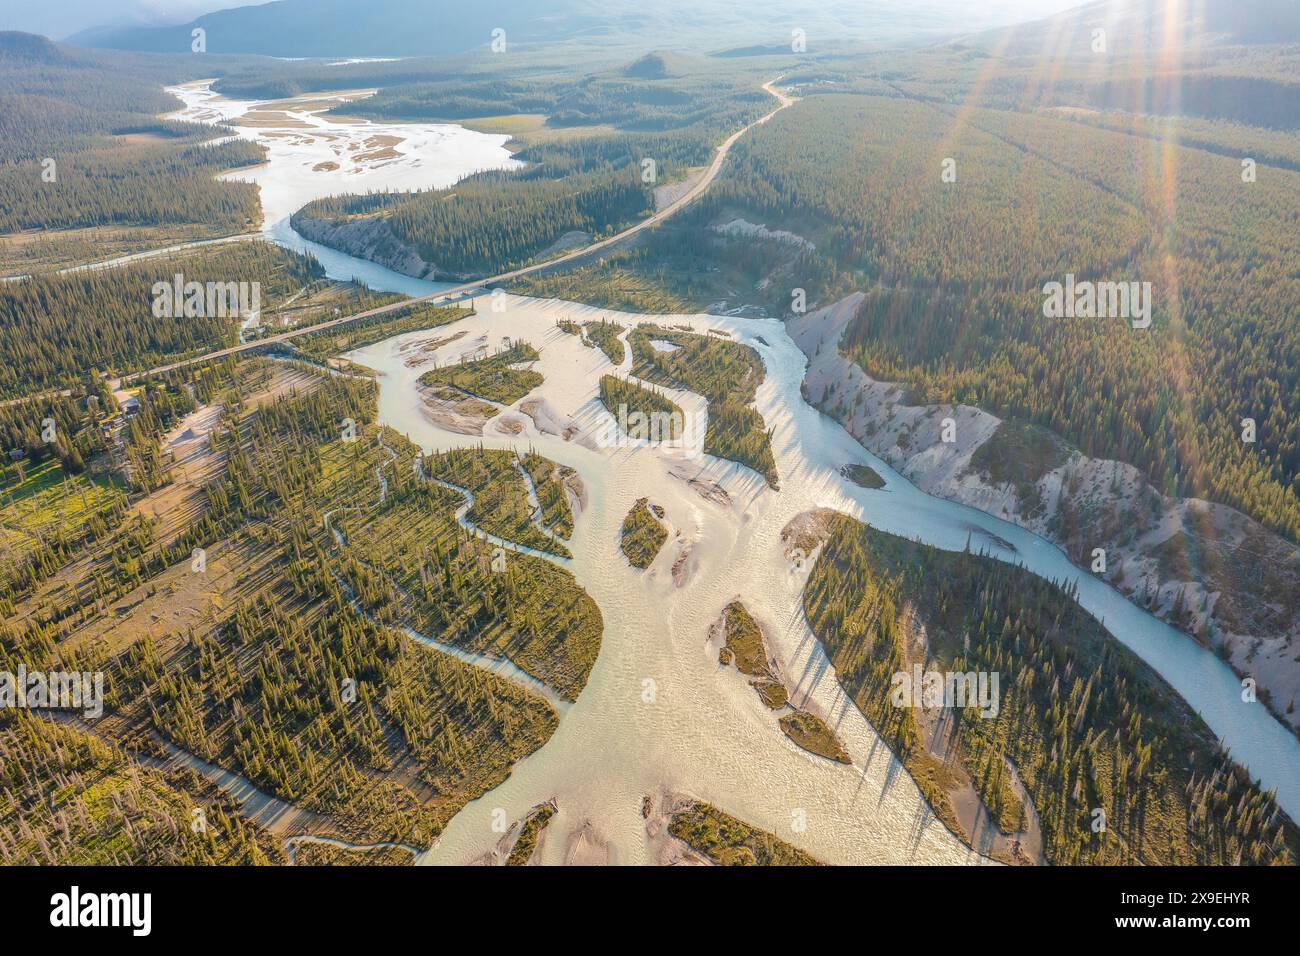 Filmage par drone d'une rivière sinueuse lors d'une inondation en plein soleil. Forêt, rochers. Nordegg, Alberta, Canada Banque D'Images